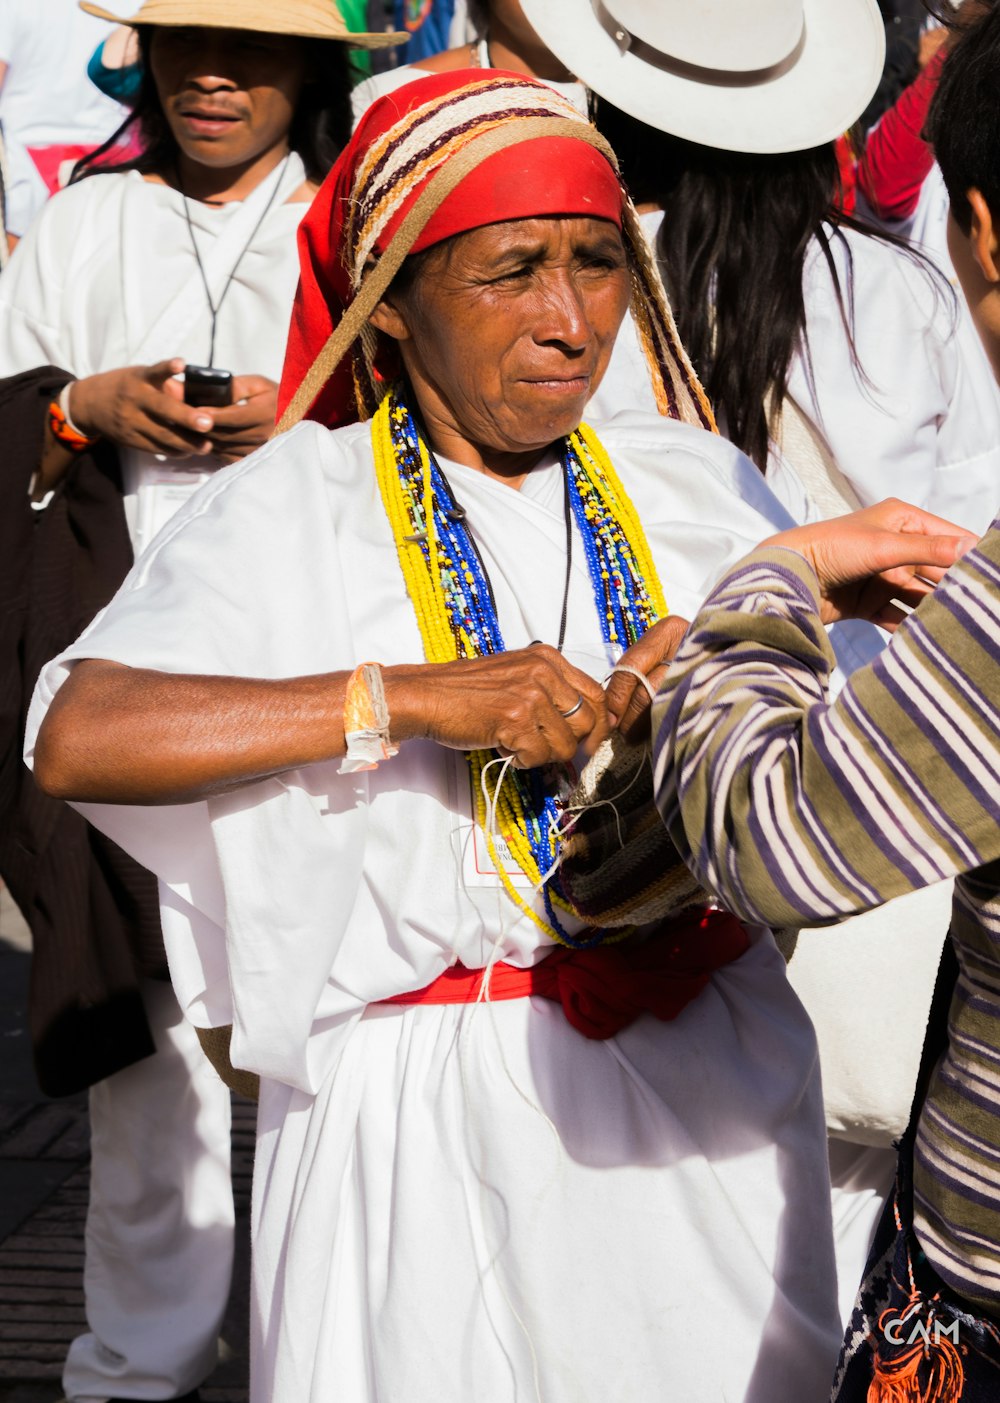 woman wearing white dress and red bandana